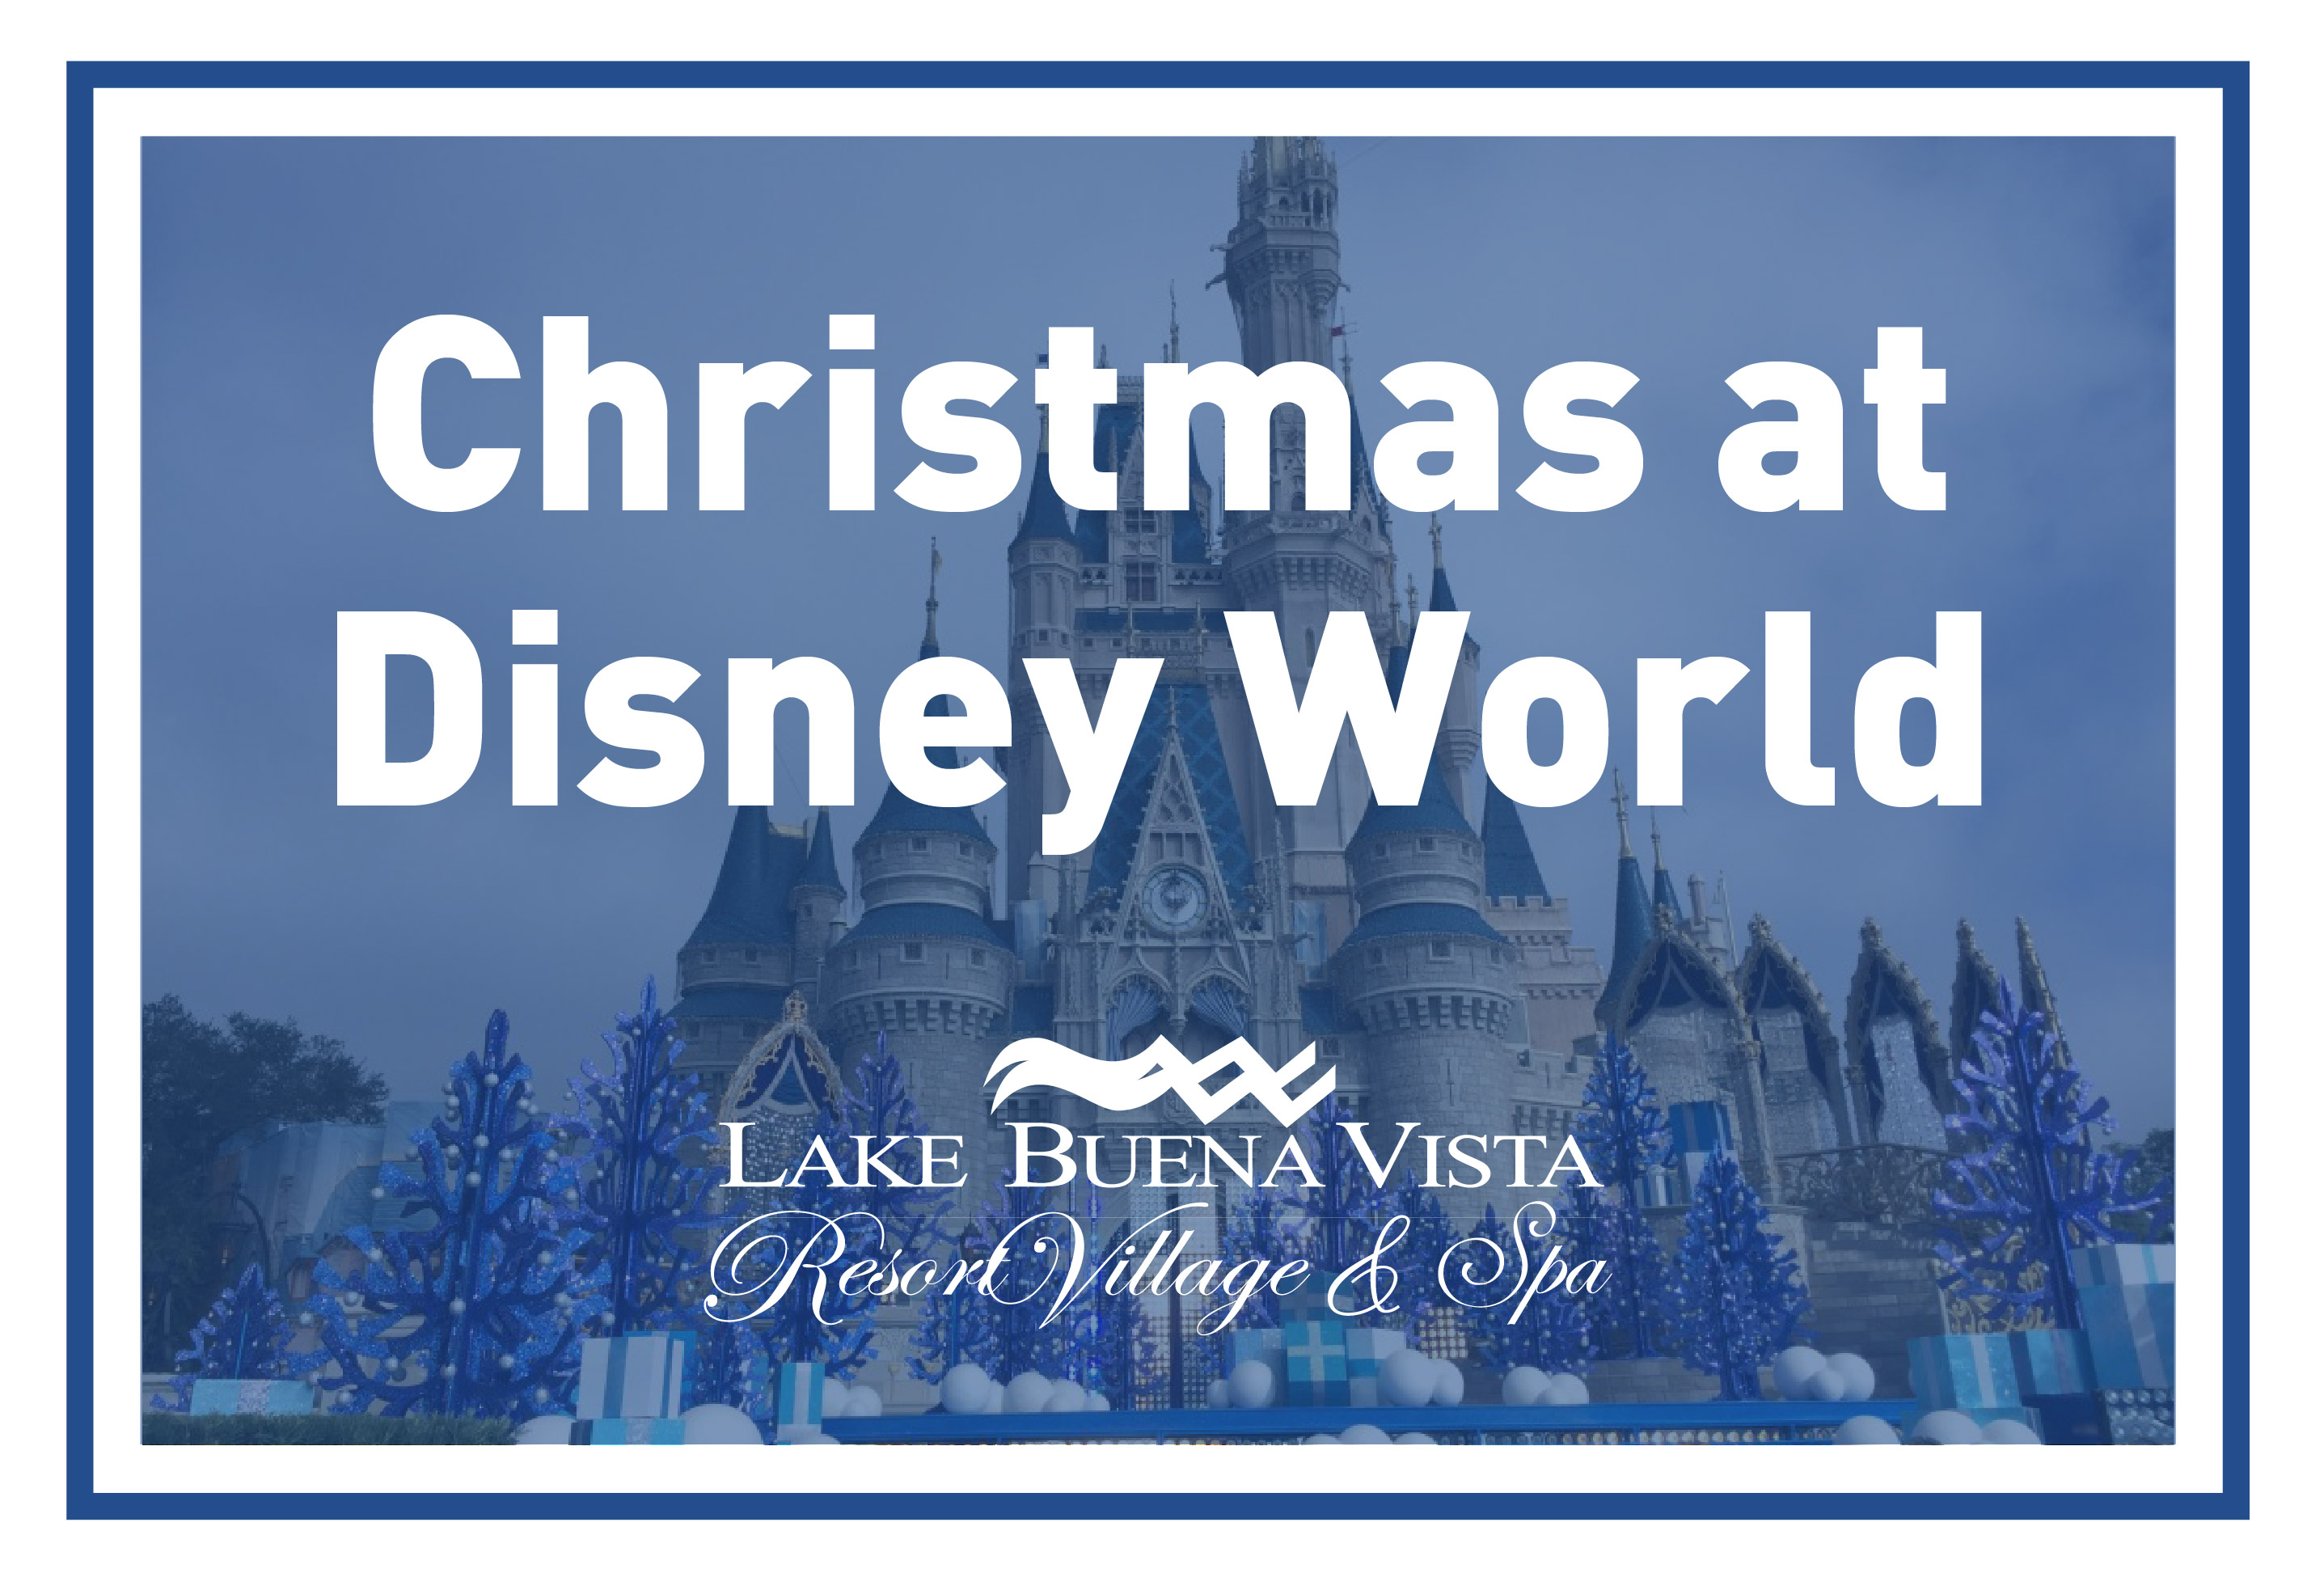 Lake Buena Vista Resort Village & Spa - Christmas at Disney World